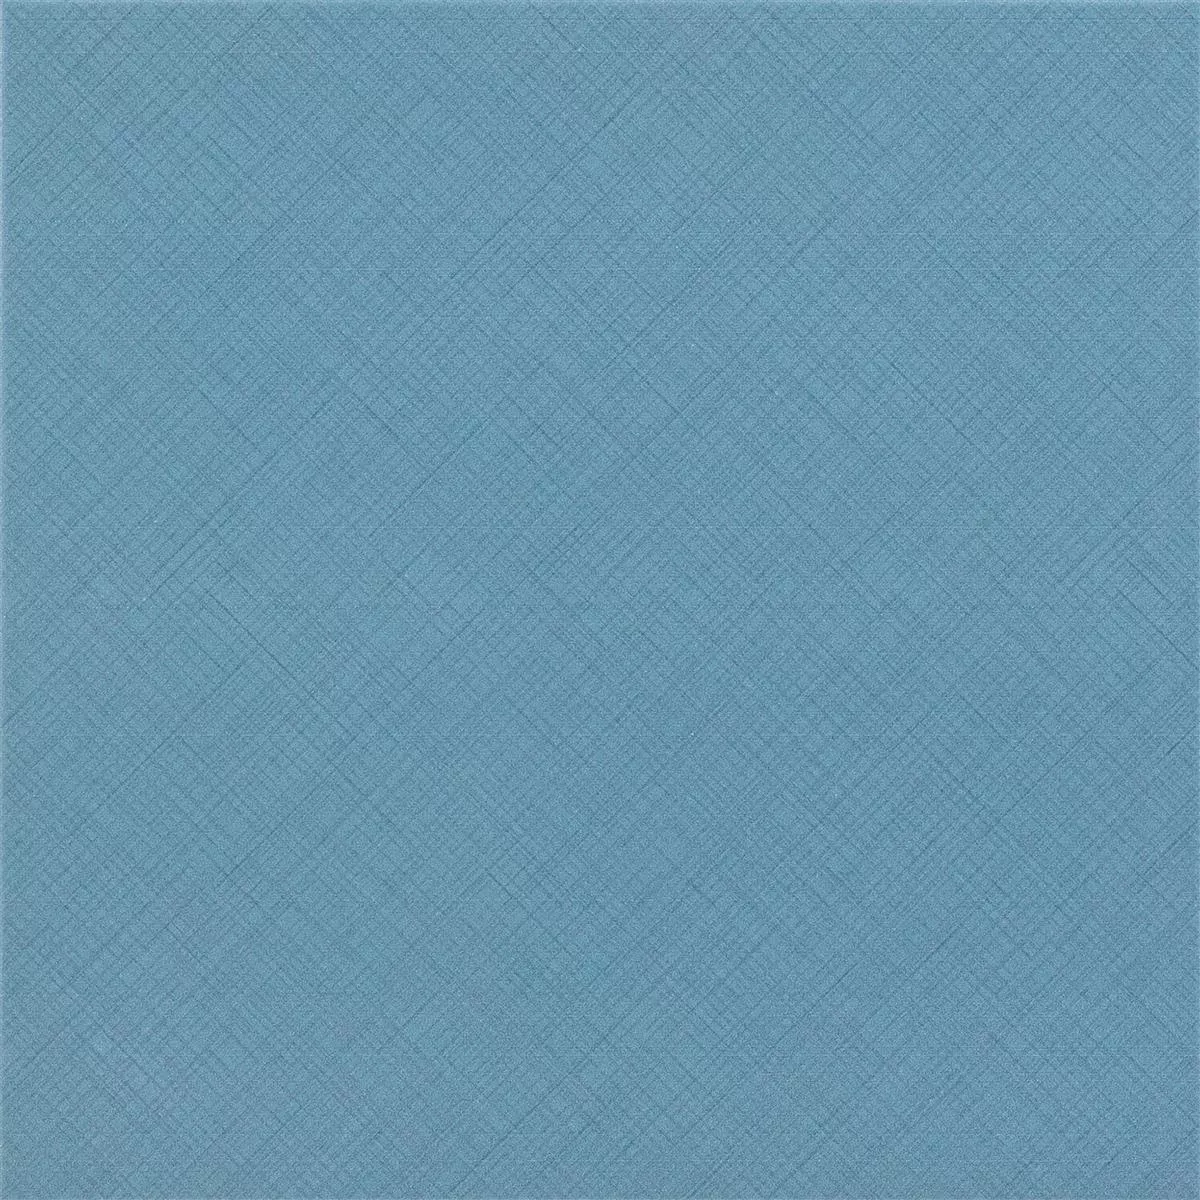 Πλακάκια Δαπέδου Εμφάνιση Tσιμέντου Wildflower Μπλε Πλακάκι Bάσης 18,5x18,5cm